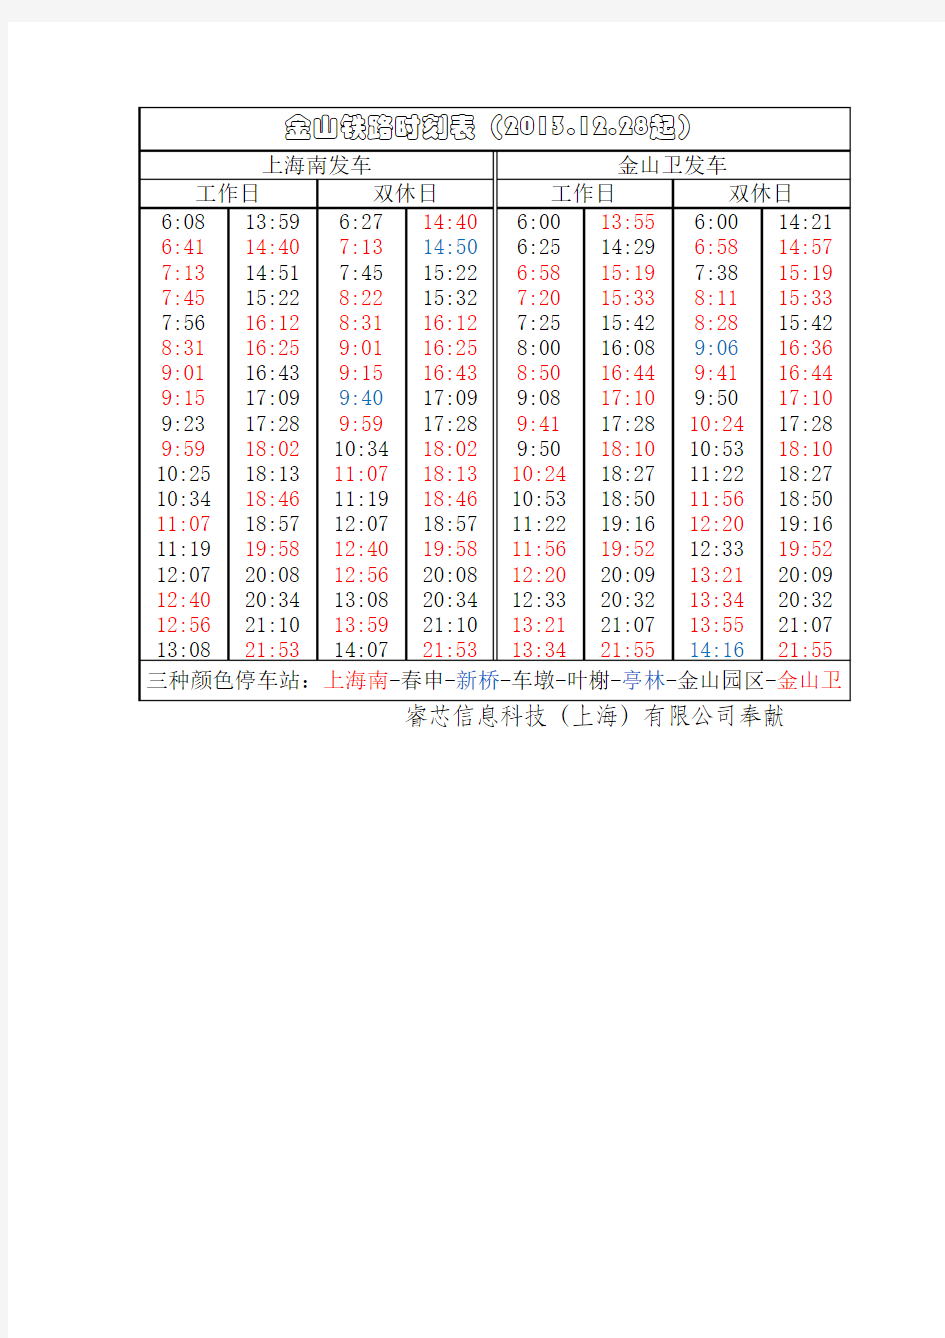 金山铁路2013年12月28日更新时刻表